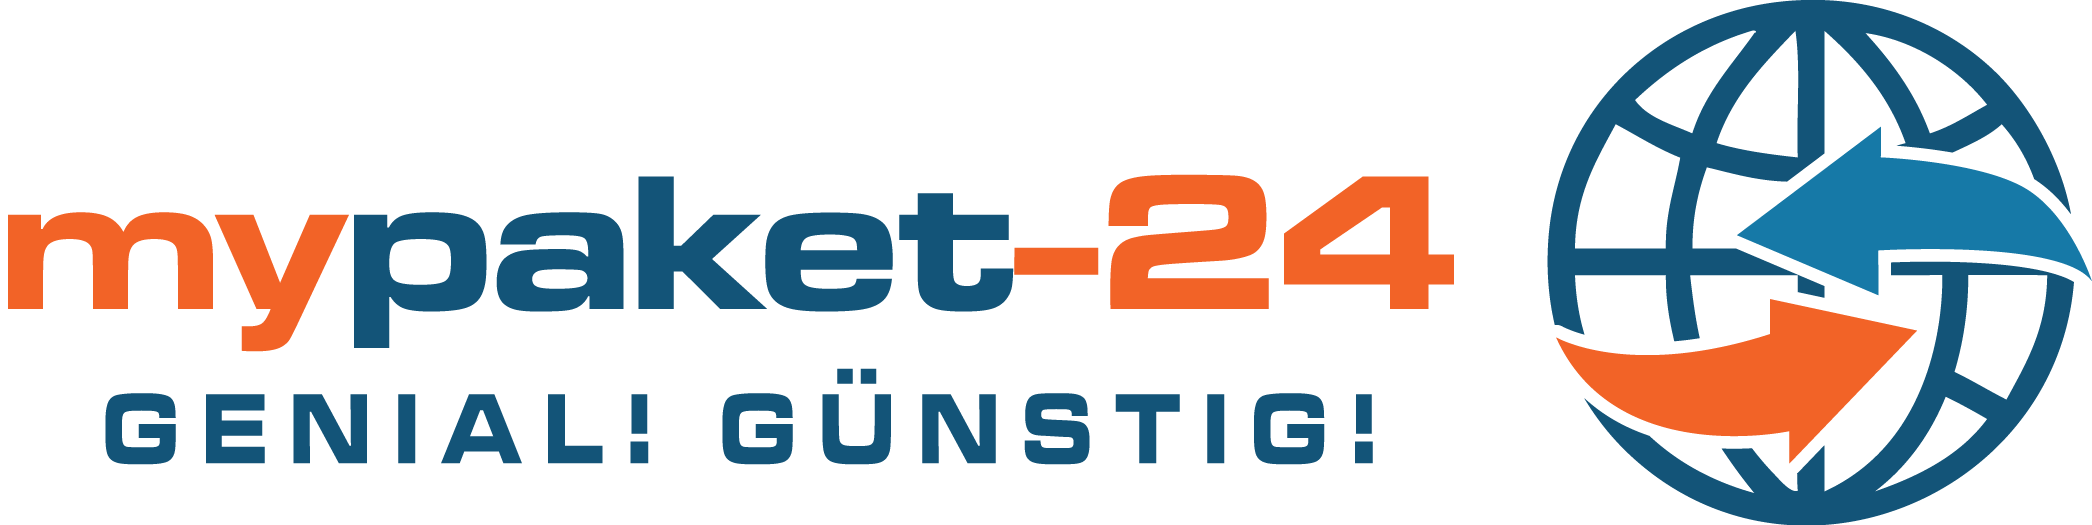 mypaket-24 logo